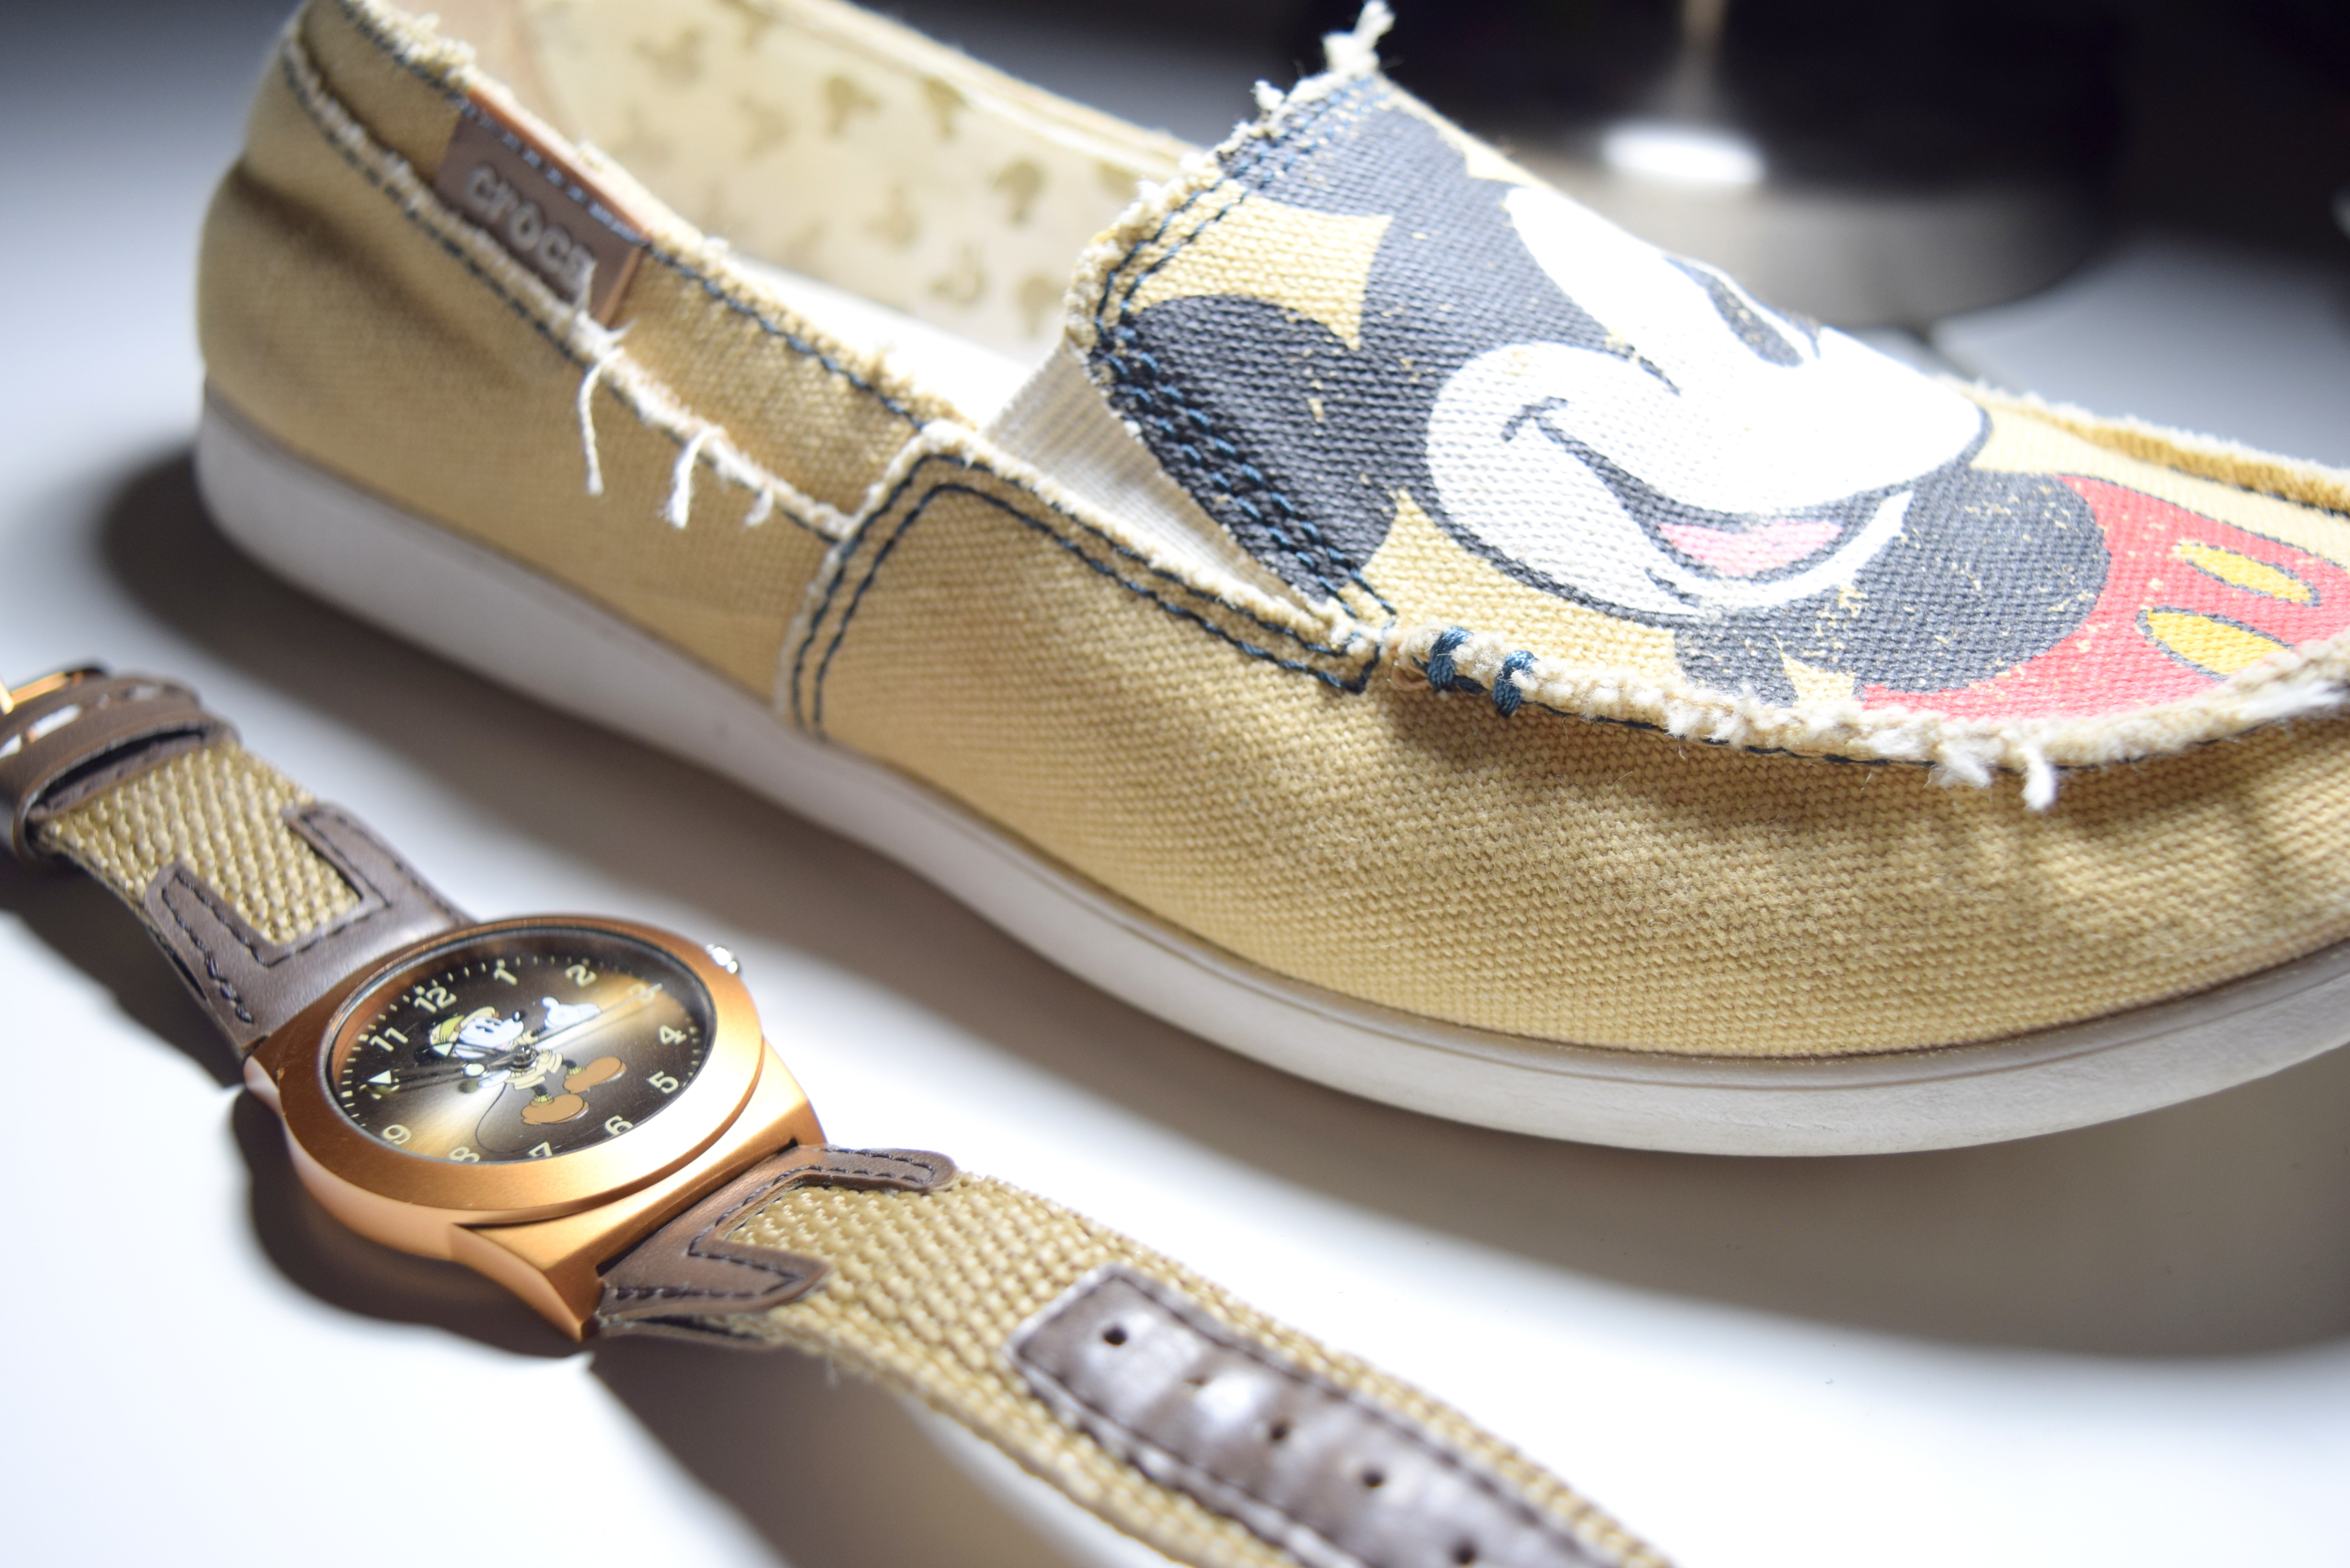 Sapatênis da Crocs comprado na World of Disney e relógio Mickey safári comprado no Animal Kingdom